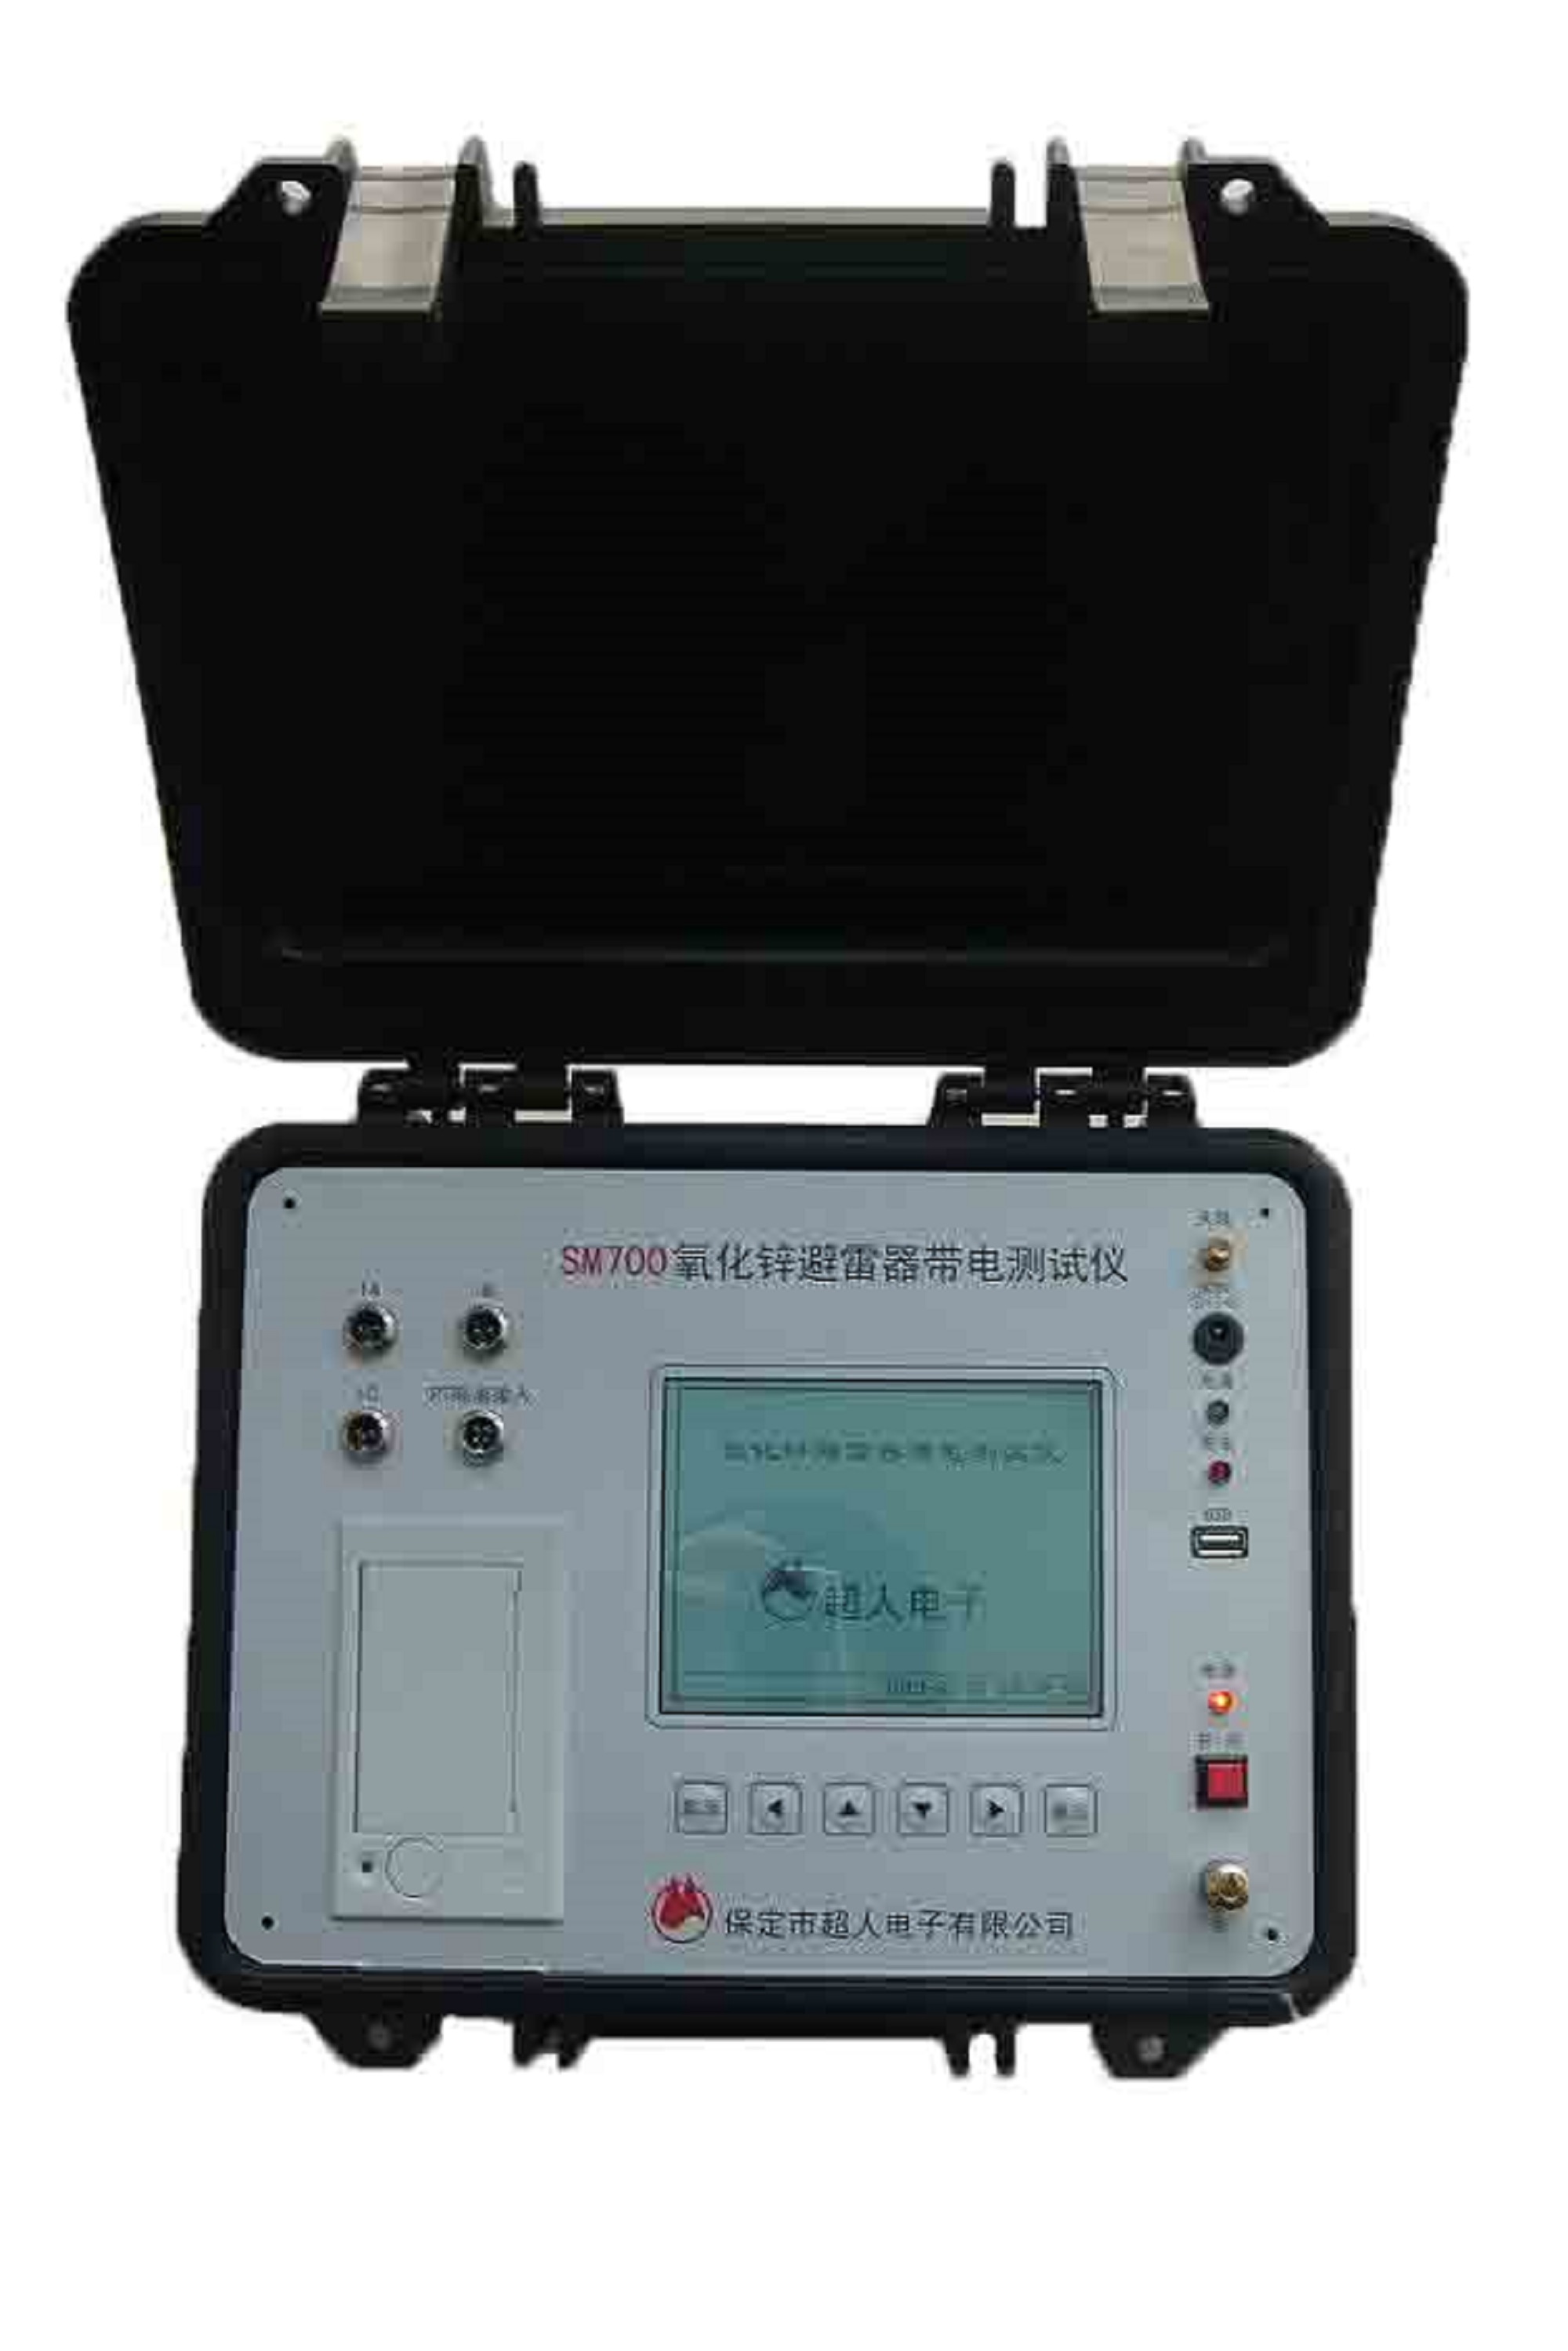 SM700氧化锌避雷器带电测试仪